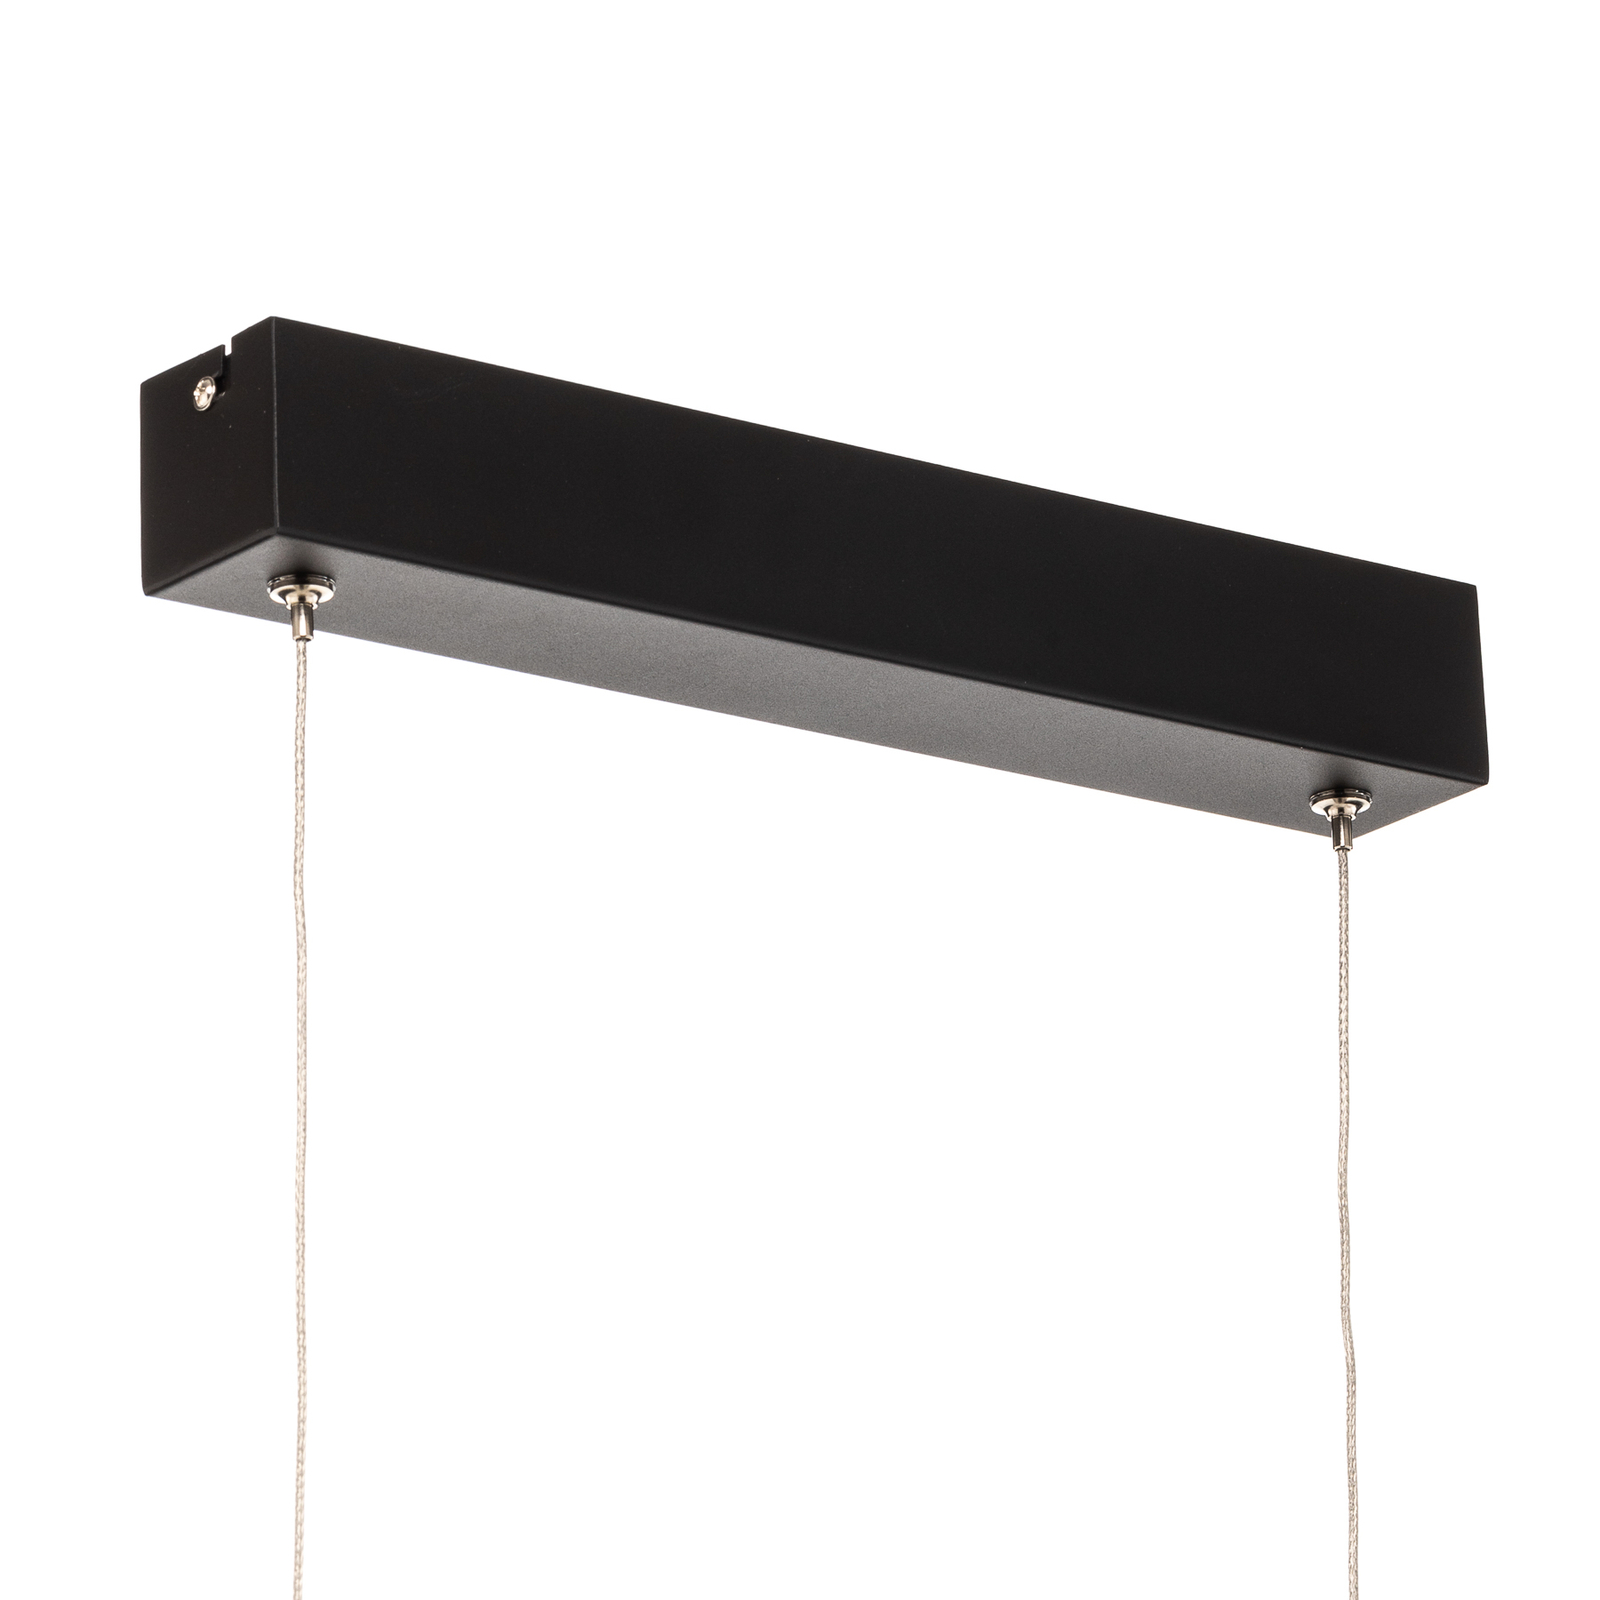 Lucande Stigis LED hanglamp, lang zwart